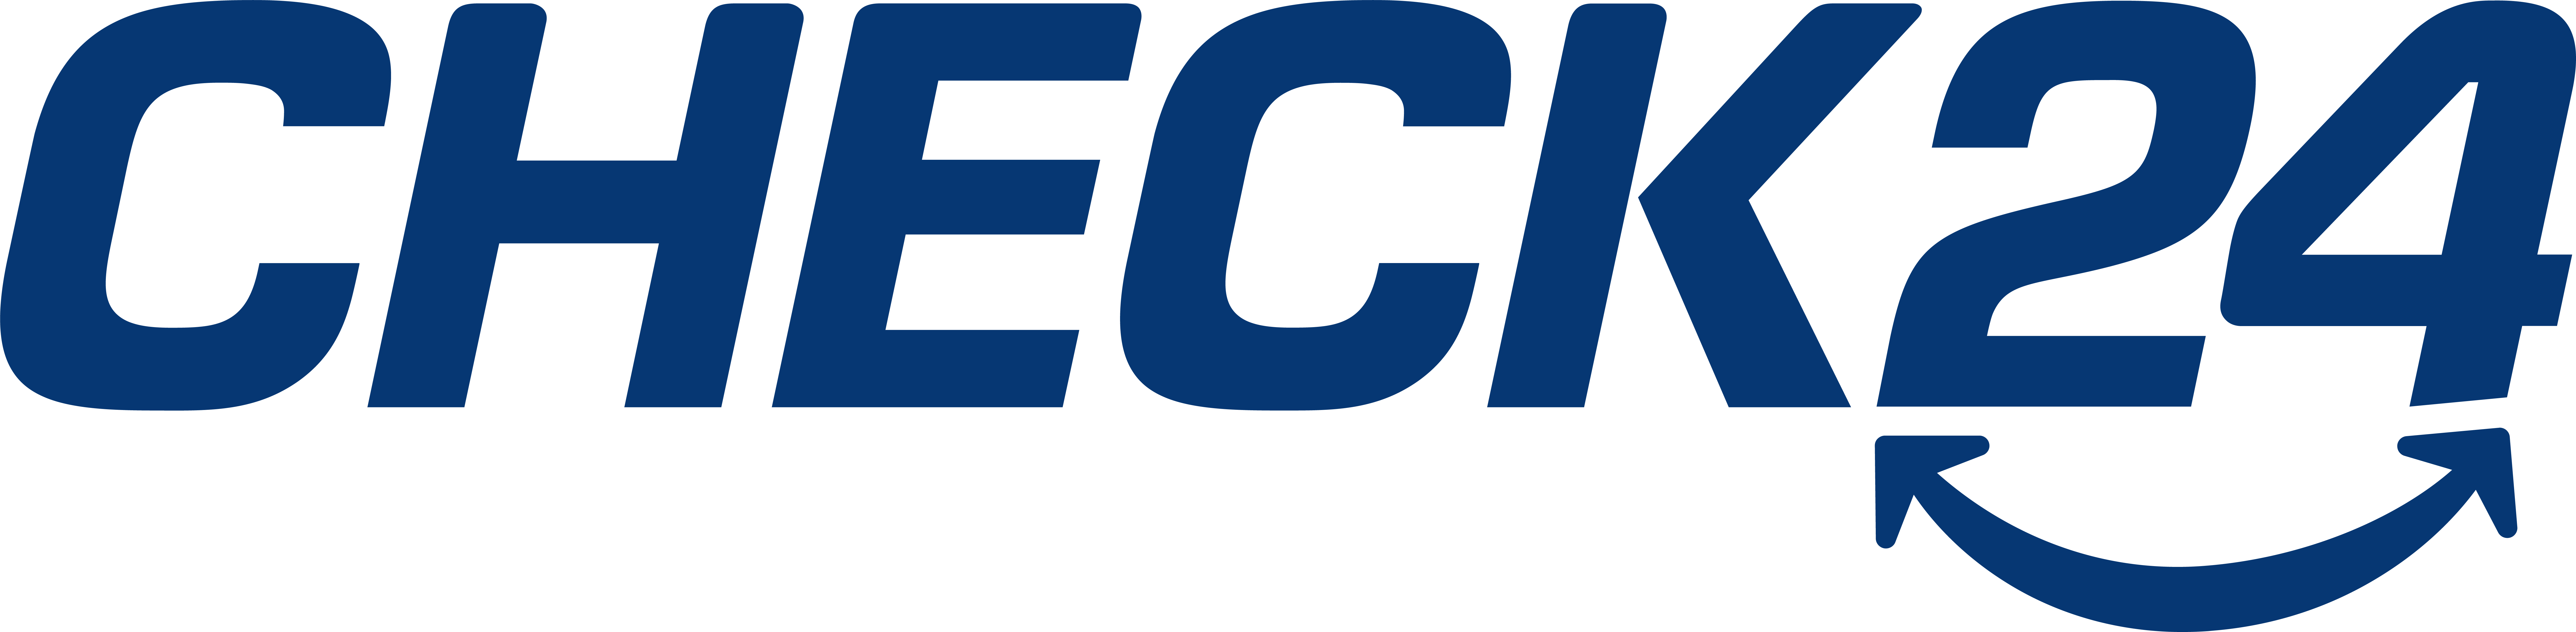 logo Check24